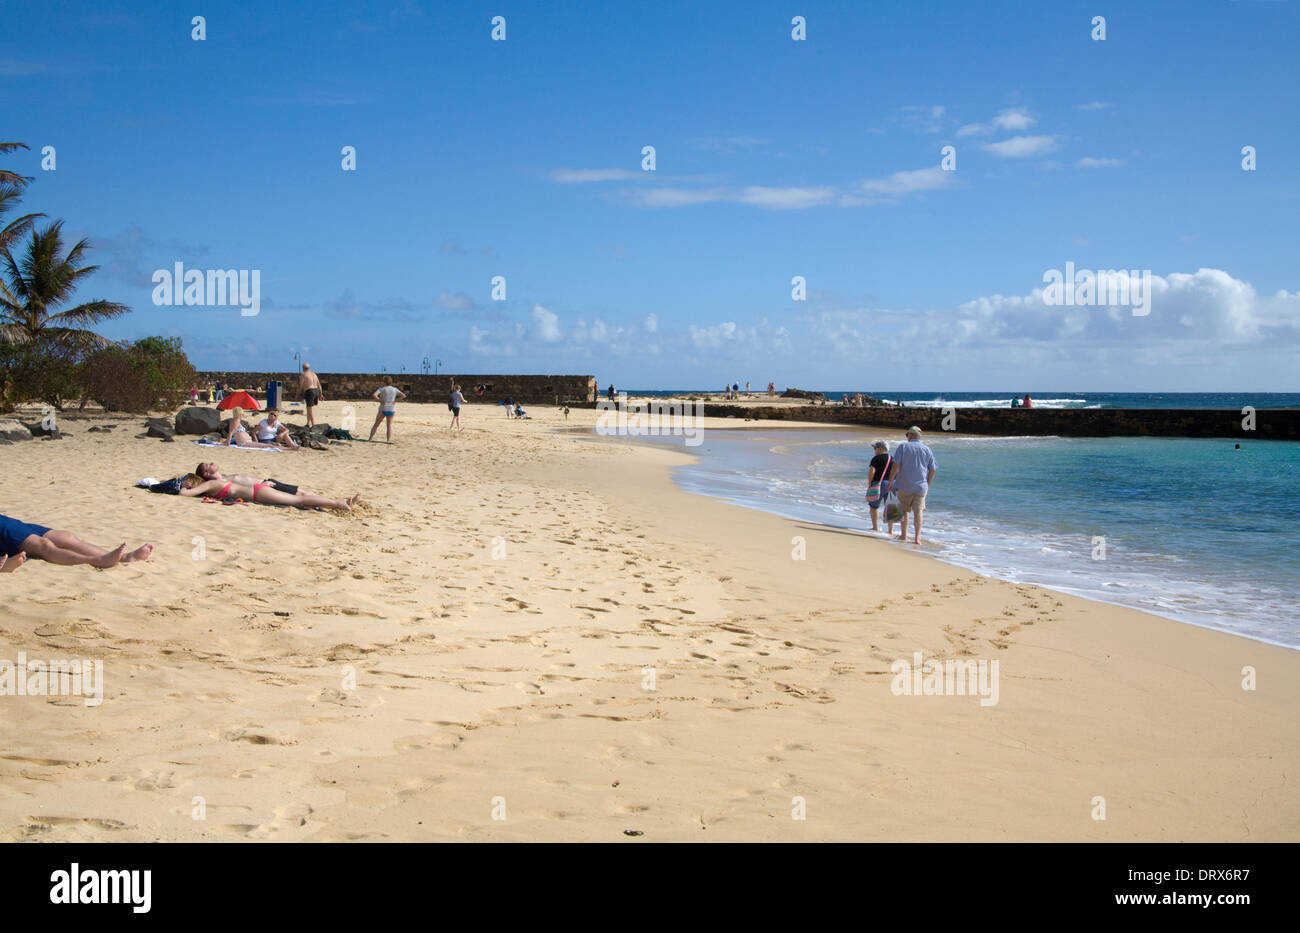 Playa de Las Cucharas Costa Teguise Lanzarote i visitatori a prendere il sole sulla bella spiaggia di sabbia fine e dorata Foto Stock